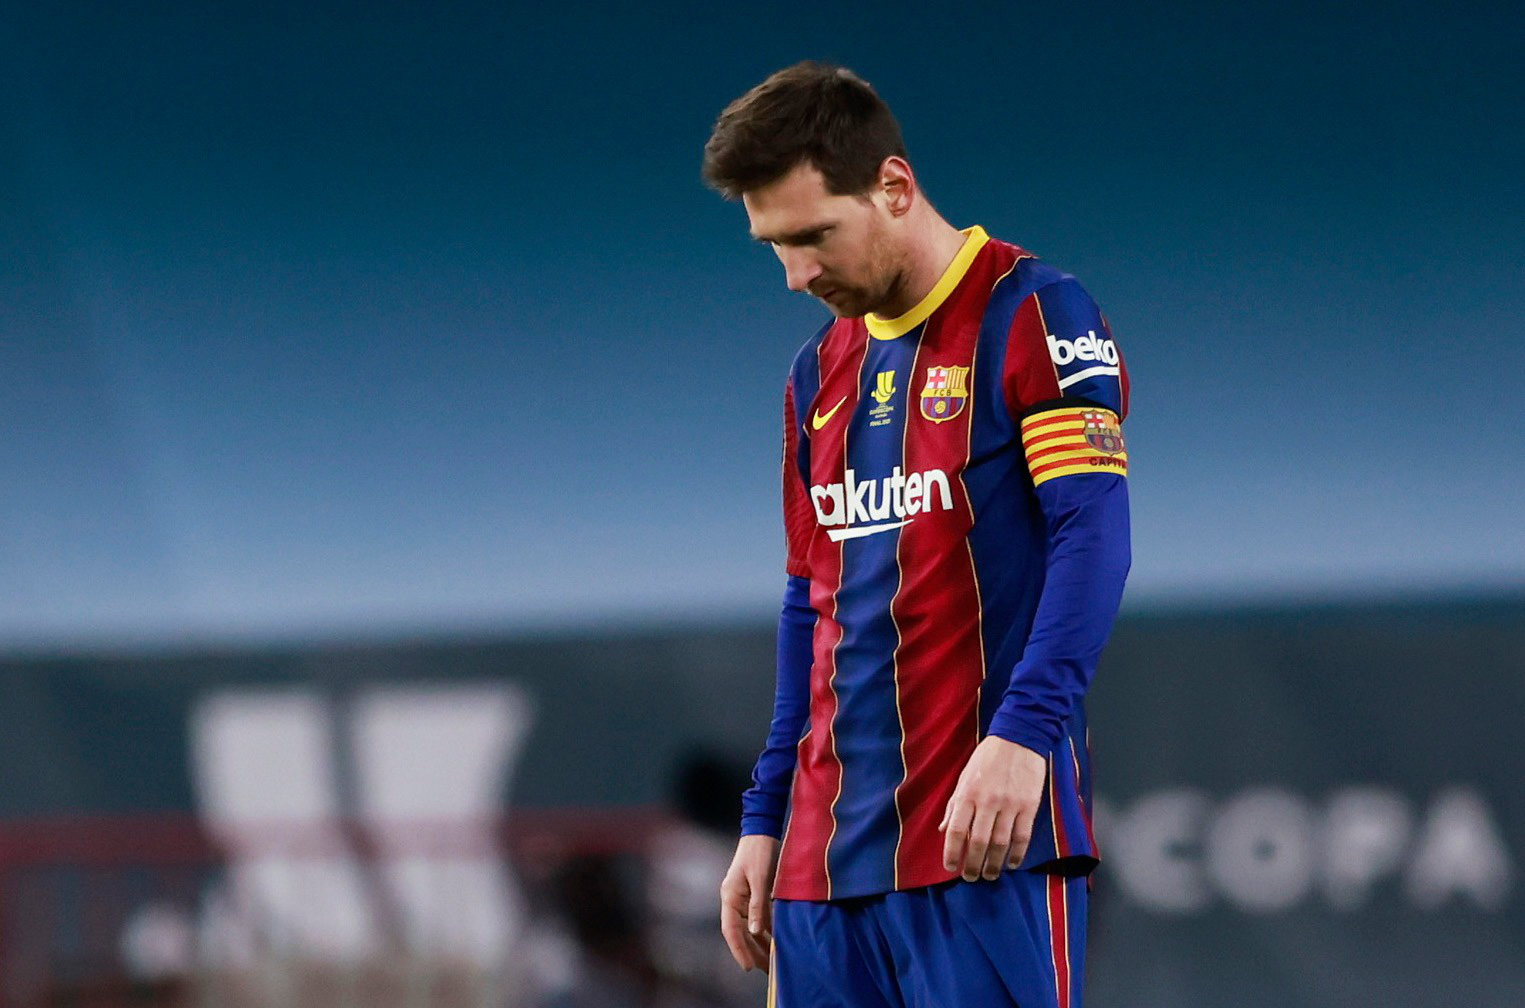 Tin tức về Messi tiếp tục ở lại Barcelona đã khiến cho cùng một lúc các CĐV và các nhà quản lý đều cảm thấy bất ngờ, nhưng cũng đầy hạnh phúc. Hãy cùng xem hình ảnh về những thước phim đáng chú ý của anh ấy tại đội bóng này.